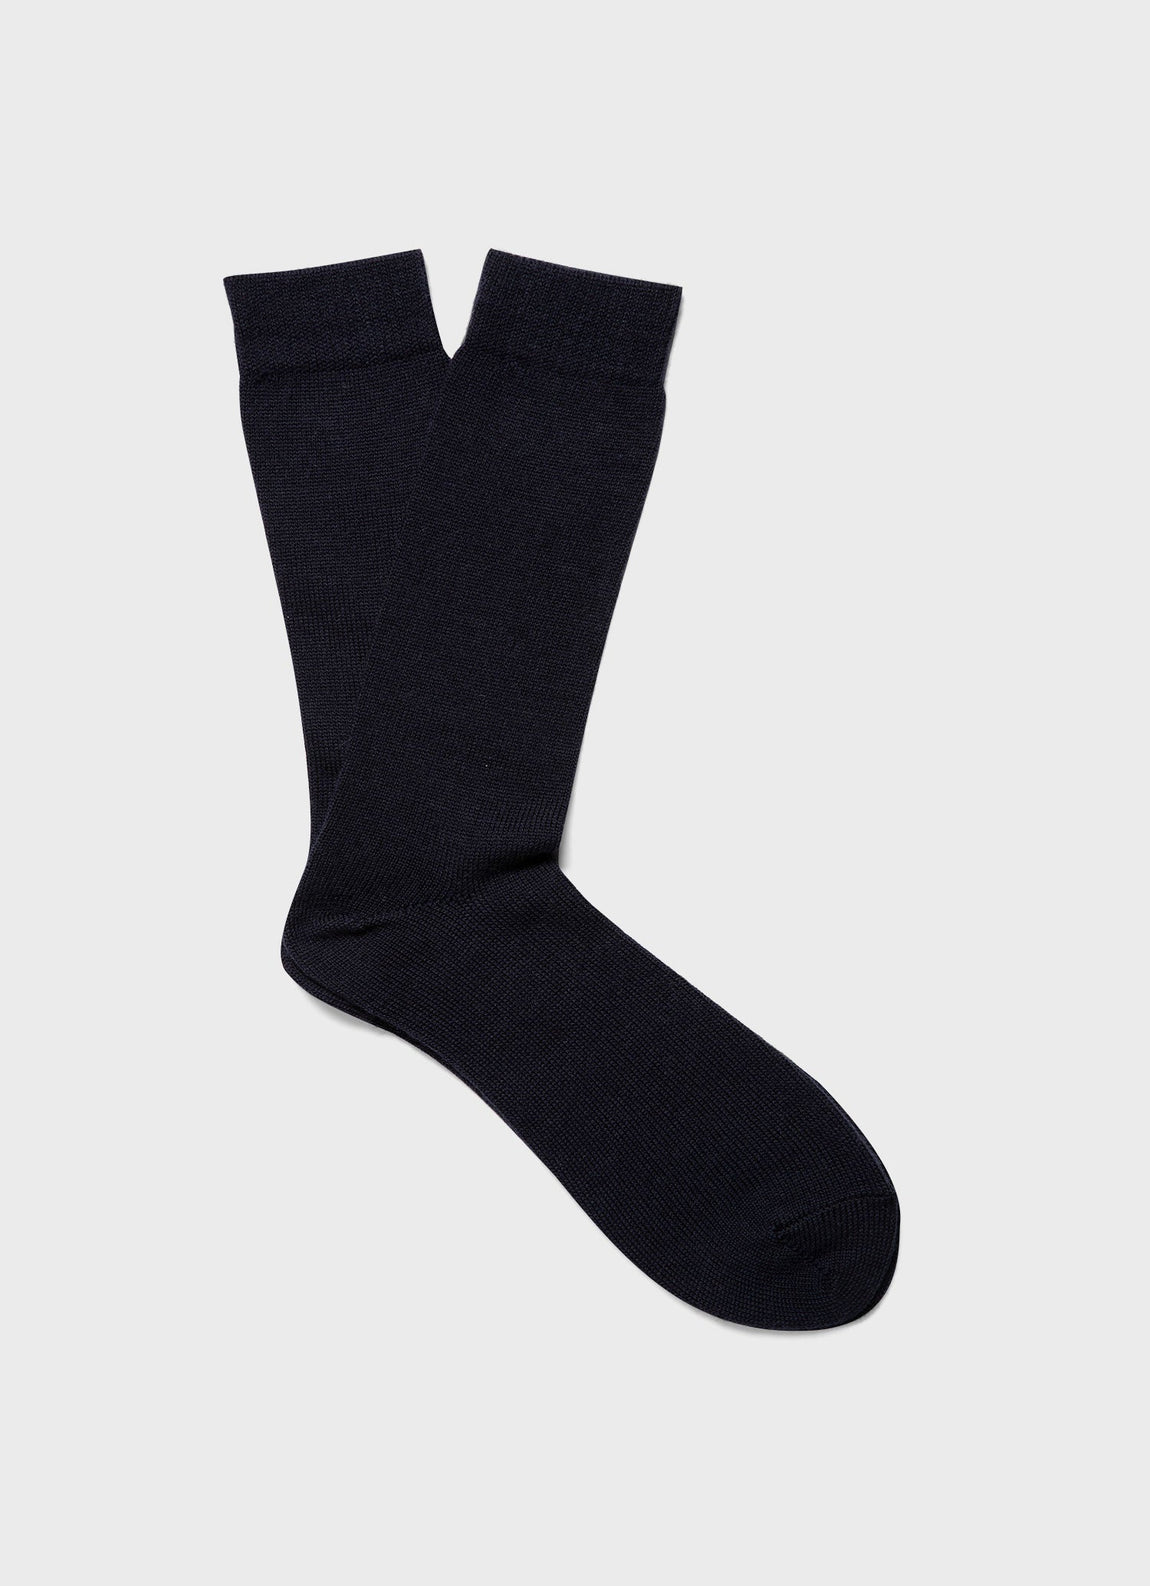 Men's Merino Wool Socks in Navy Twist